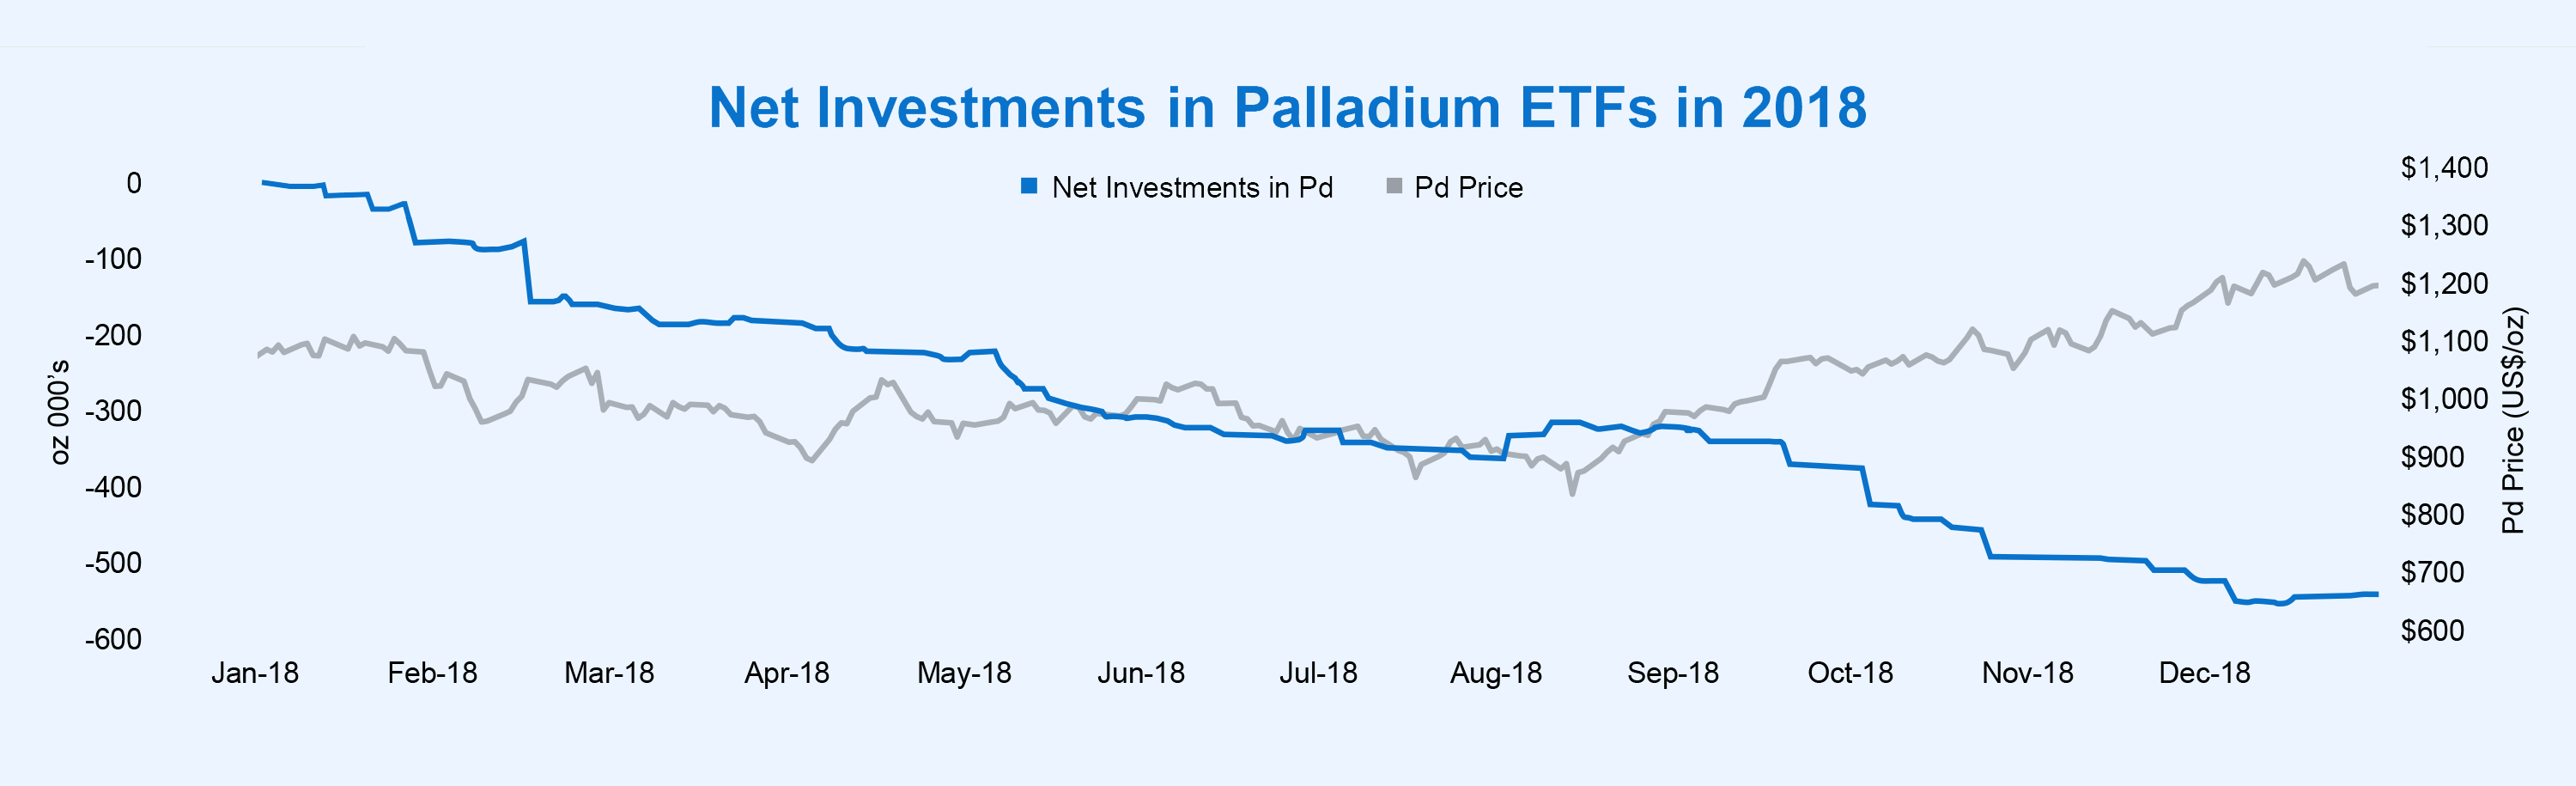 Net Investments in Palladium ETFs in 2018